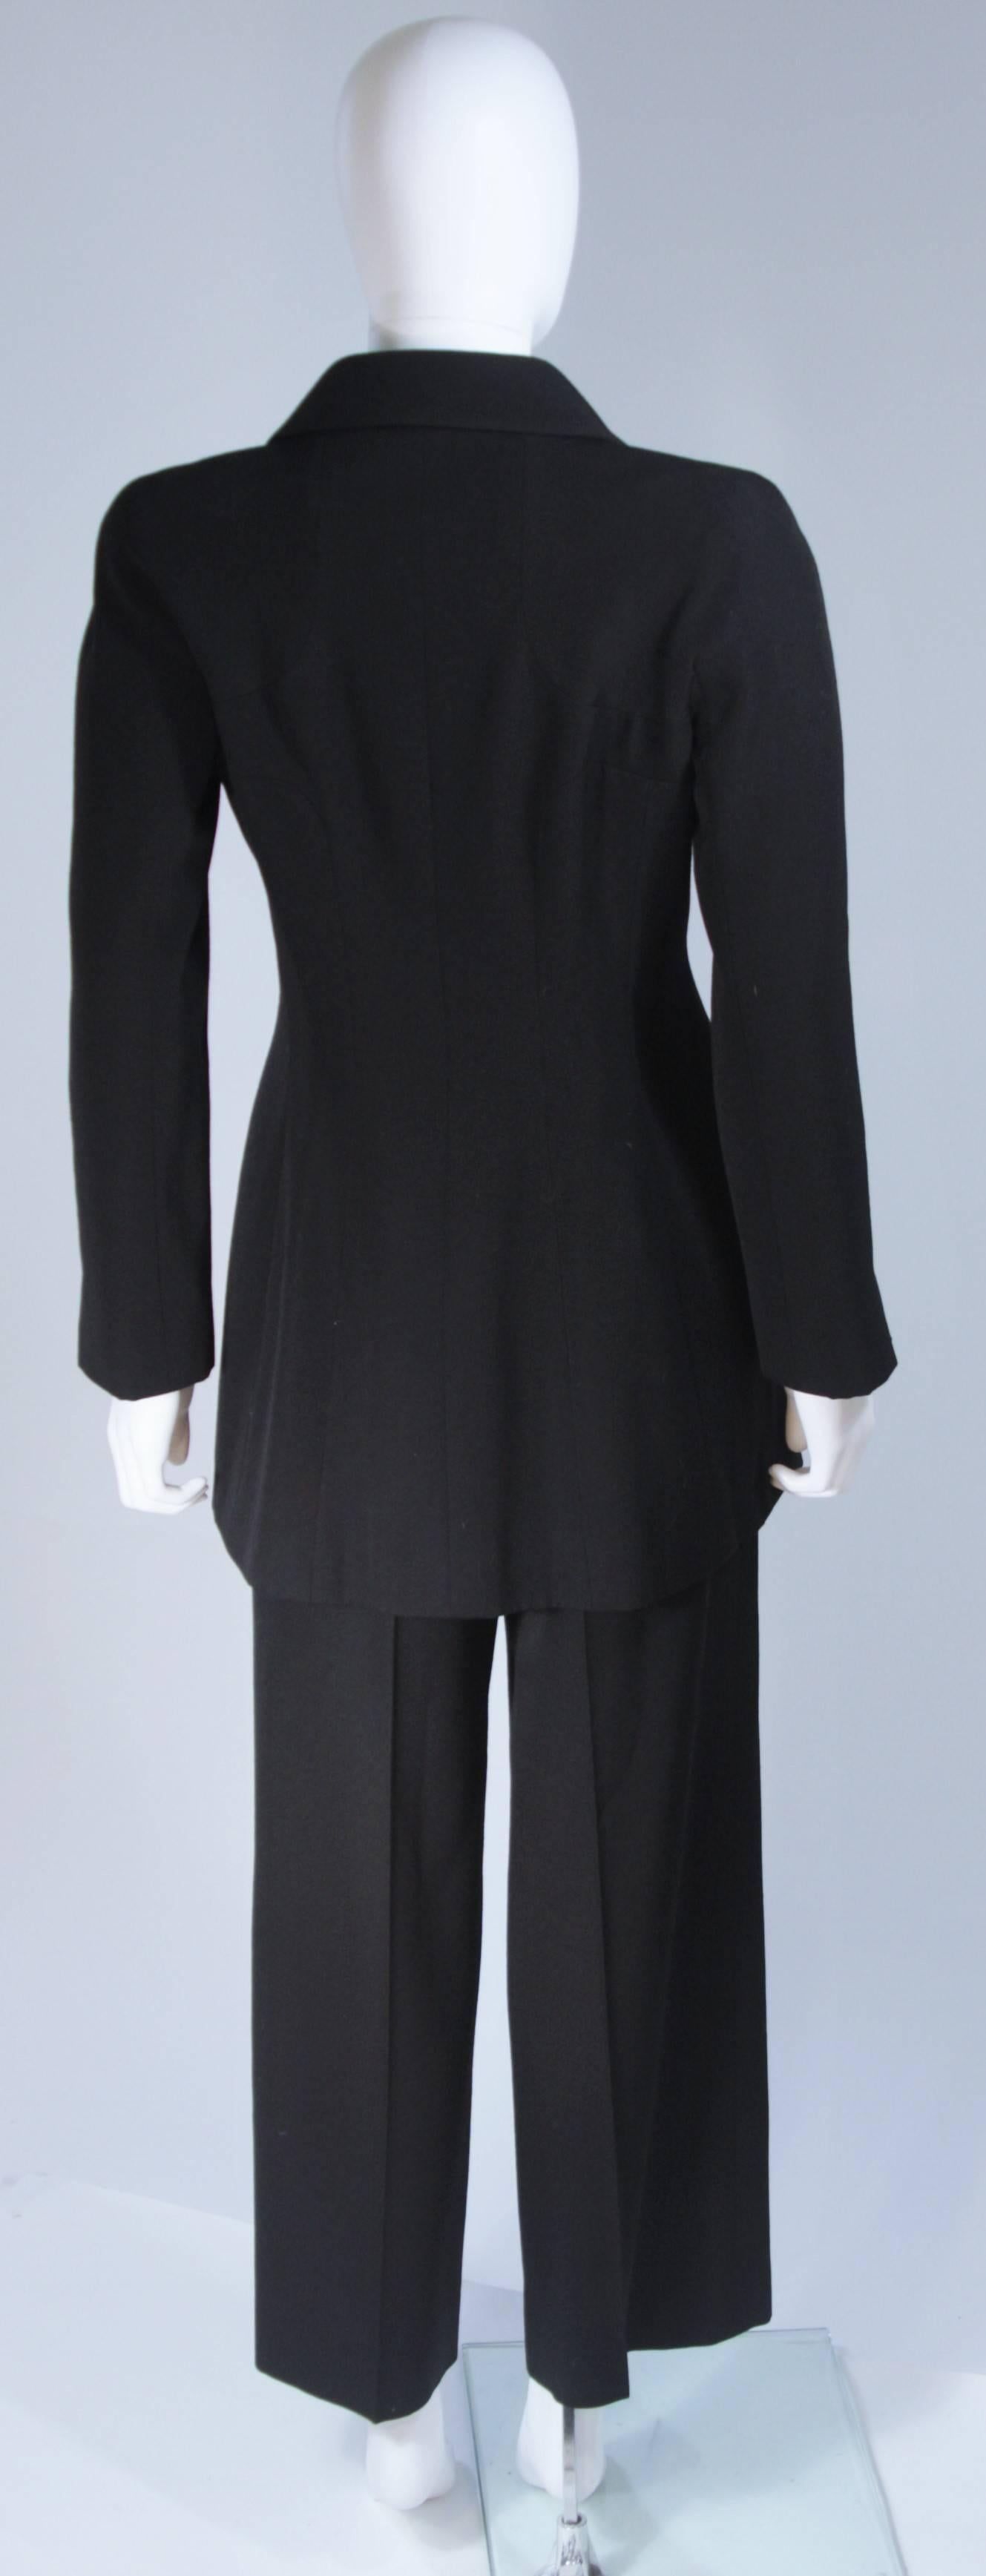 CHANEL Black Pant Suit Size 40 2